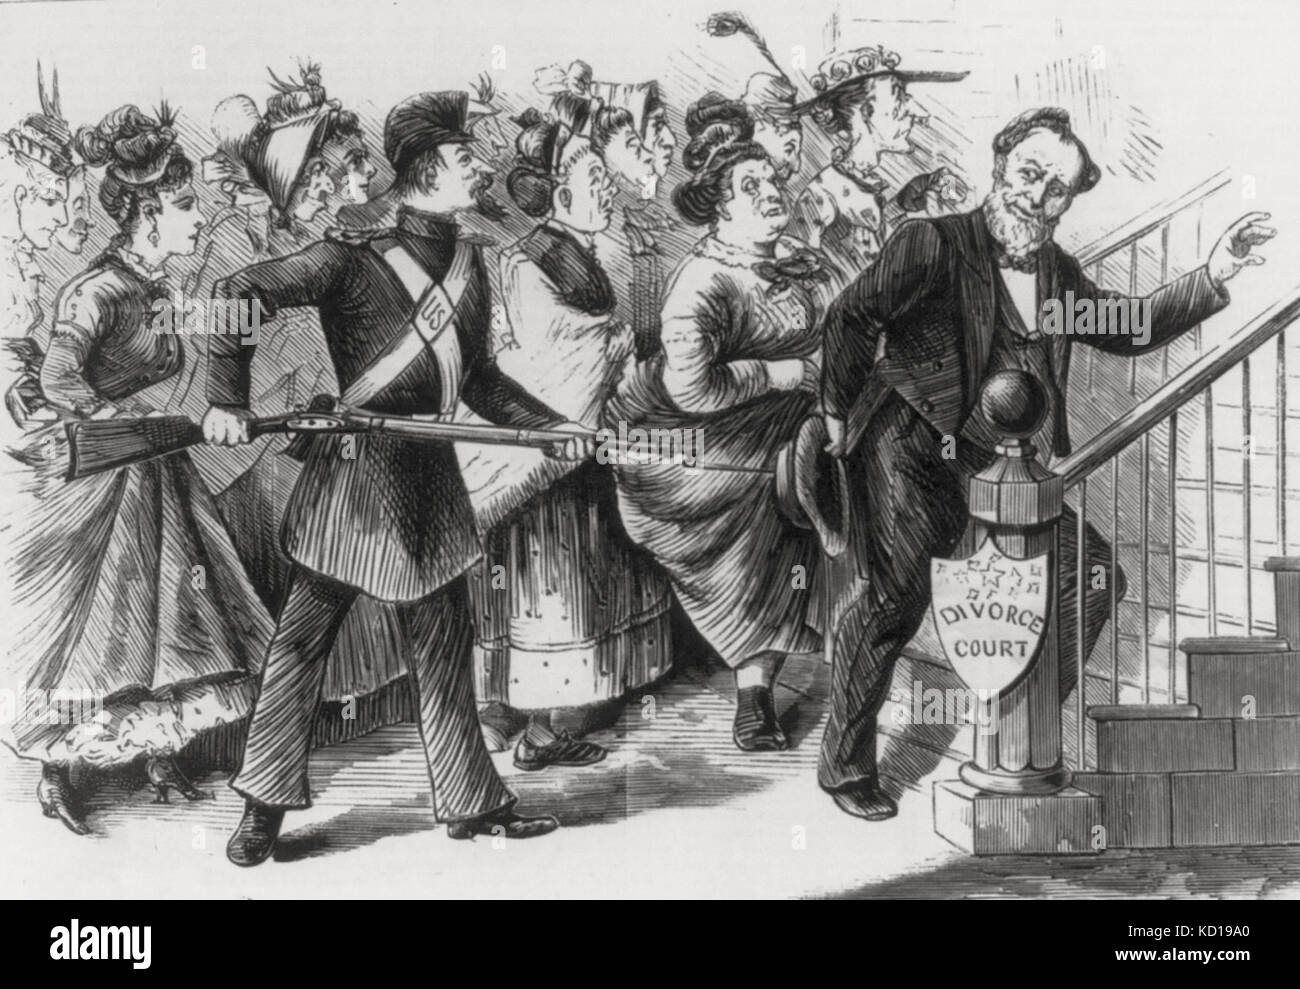 'Qu'il est tenu de venir à" - soldat américain Brigham Young en forçant la cour de divorce. Caricature politique, 1873 Banque D'Images